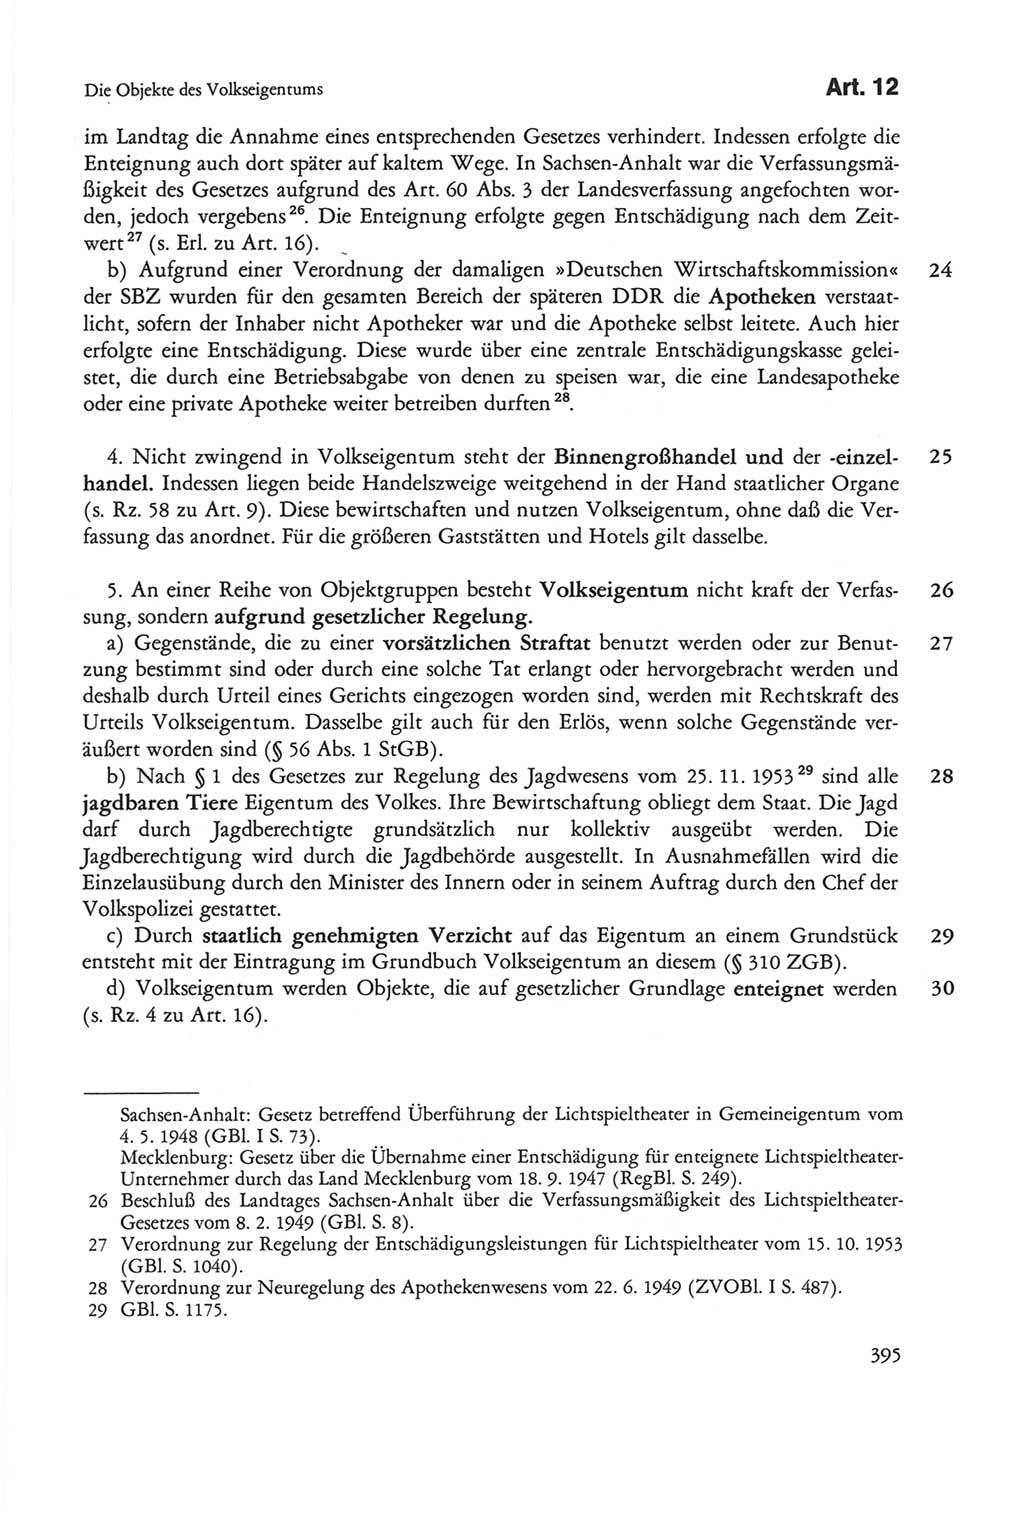 Die sozialistische Verfassung der Deutschen Demokratischen Republik (DDR), Kommentar 1982, Seite 395 (Soz. Verf. DDR Komm. 1982, S. 395)